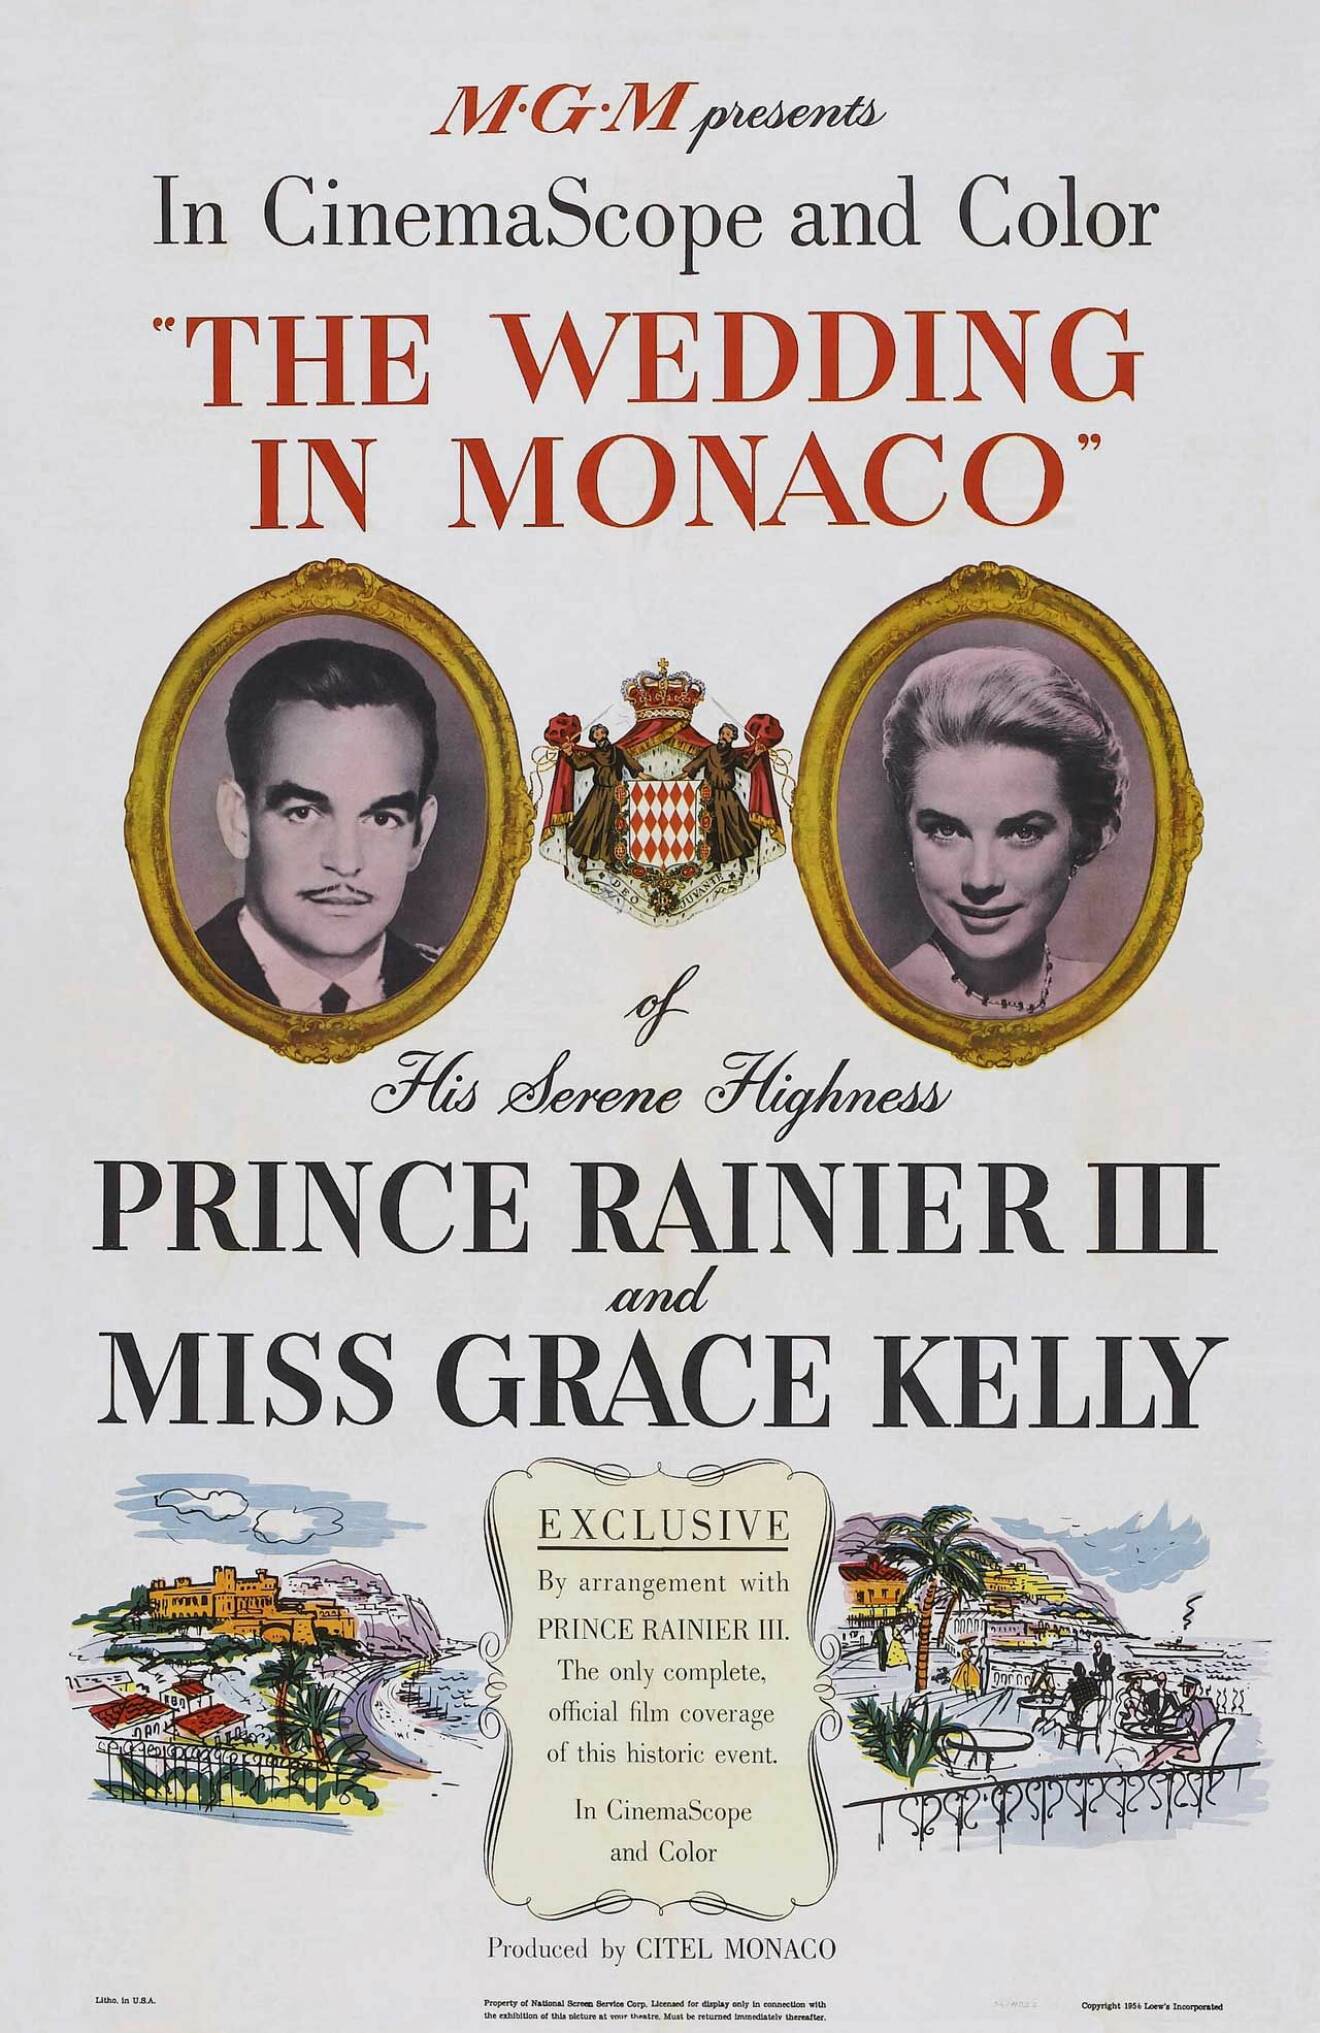 Bröllopet mellan Hollywoodstjärnan Grace Kelly och furst Rainier skapade stora rubriker. 